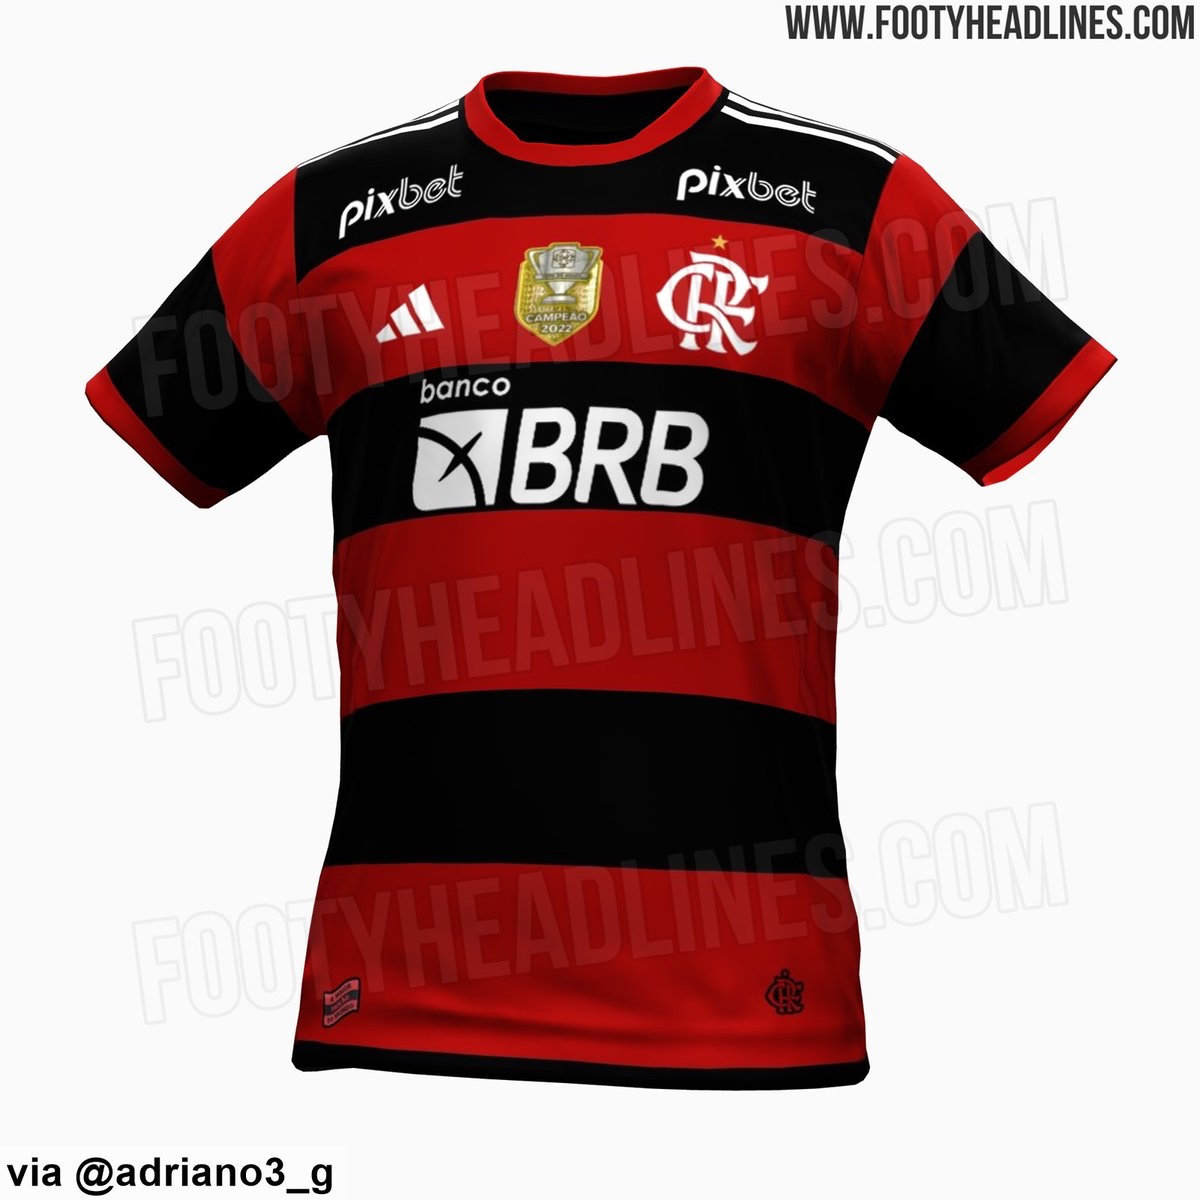 Futmais | Menino Fut on X: "⚠️ Flamengo e Adidas vão lançar o uniforme  principal da temporada 2023 no dia 27/01. A camisa é muito semelhante a  divulgada pelo @Footy_Headlines. Os uniformes